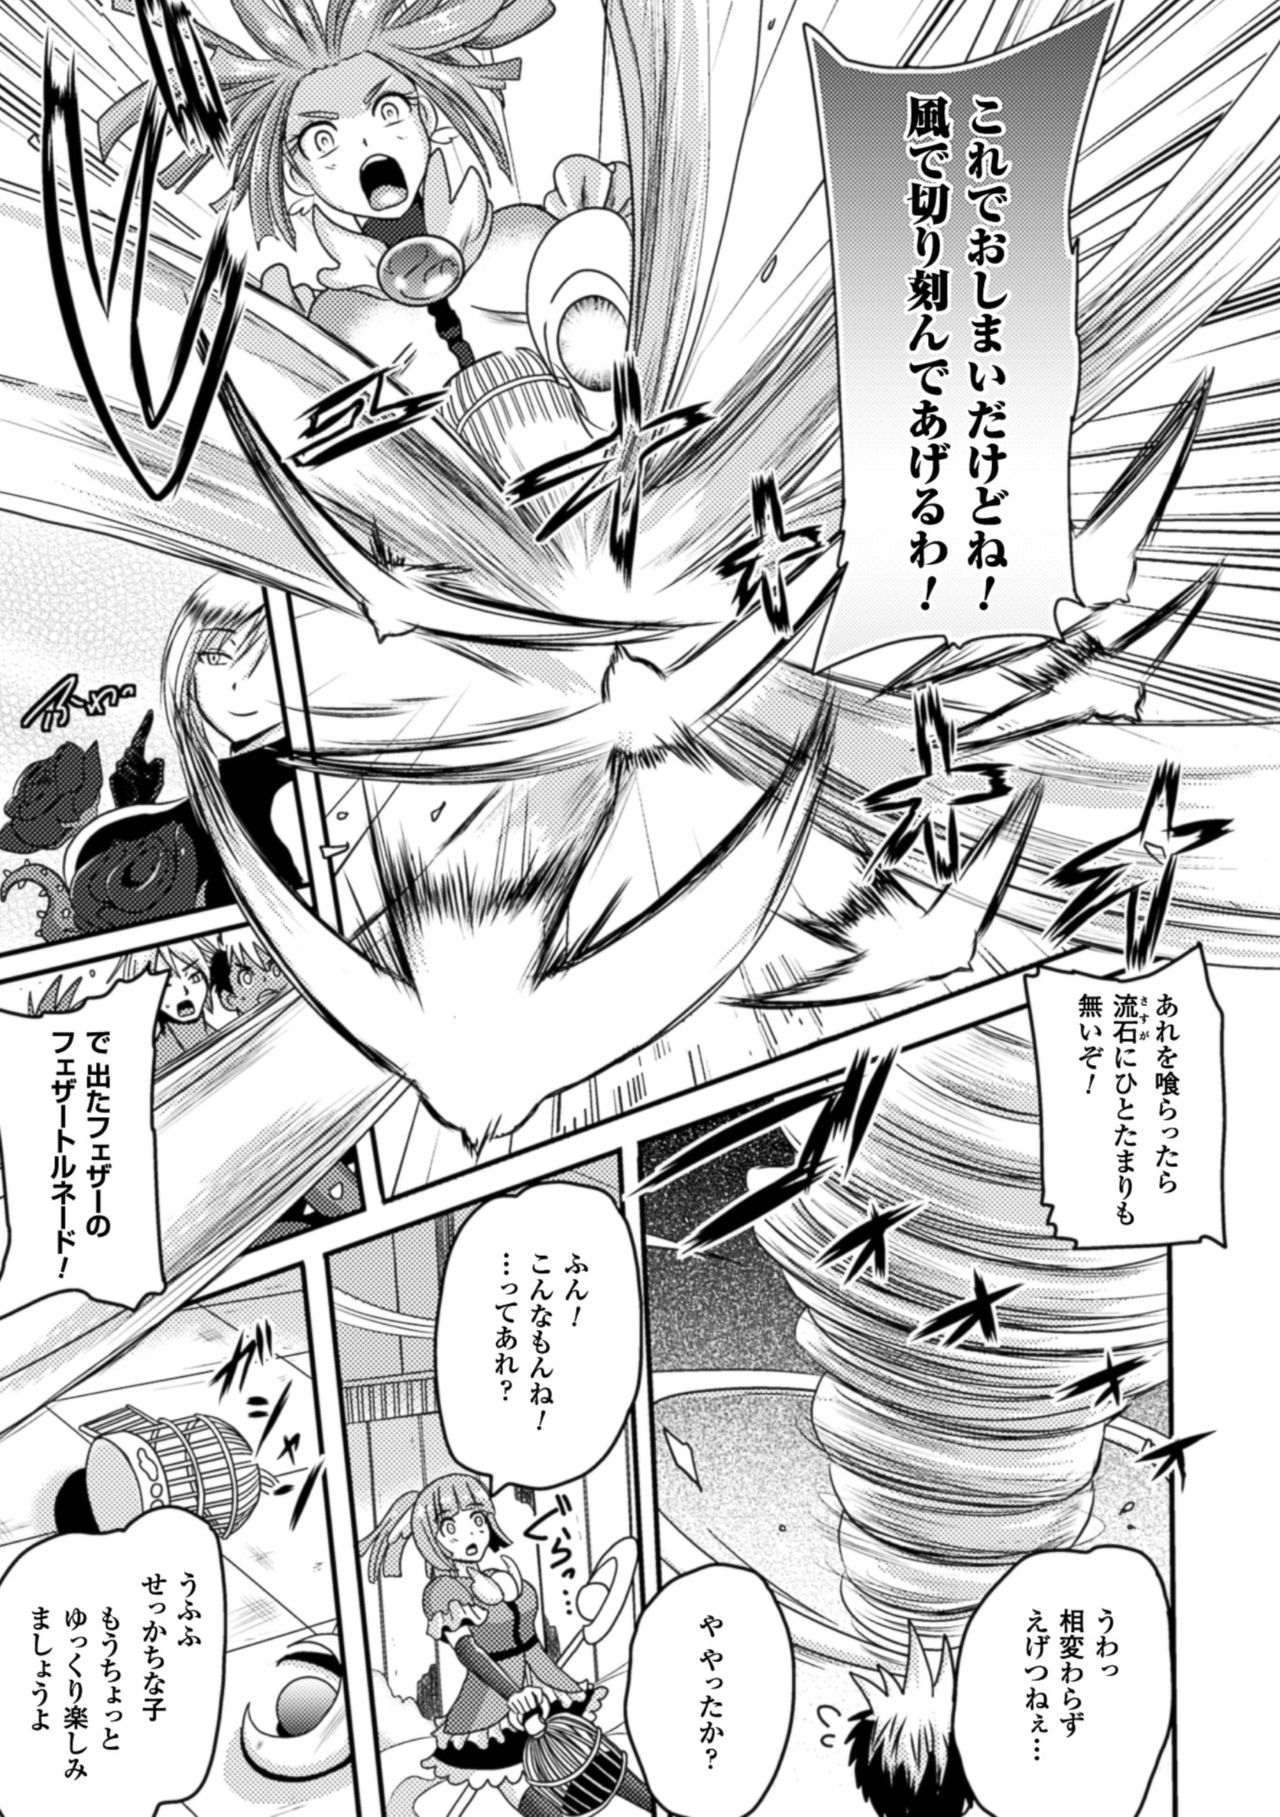 [Akuochisukii Sensei] Akuochisukii Sensei no Heroine Haiboku no Houteishiki - Equation of Heroine's defeat by Mr. Akuochisukii [Digital] 72